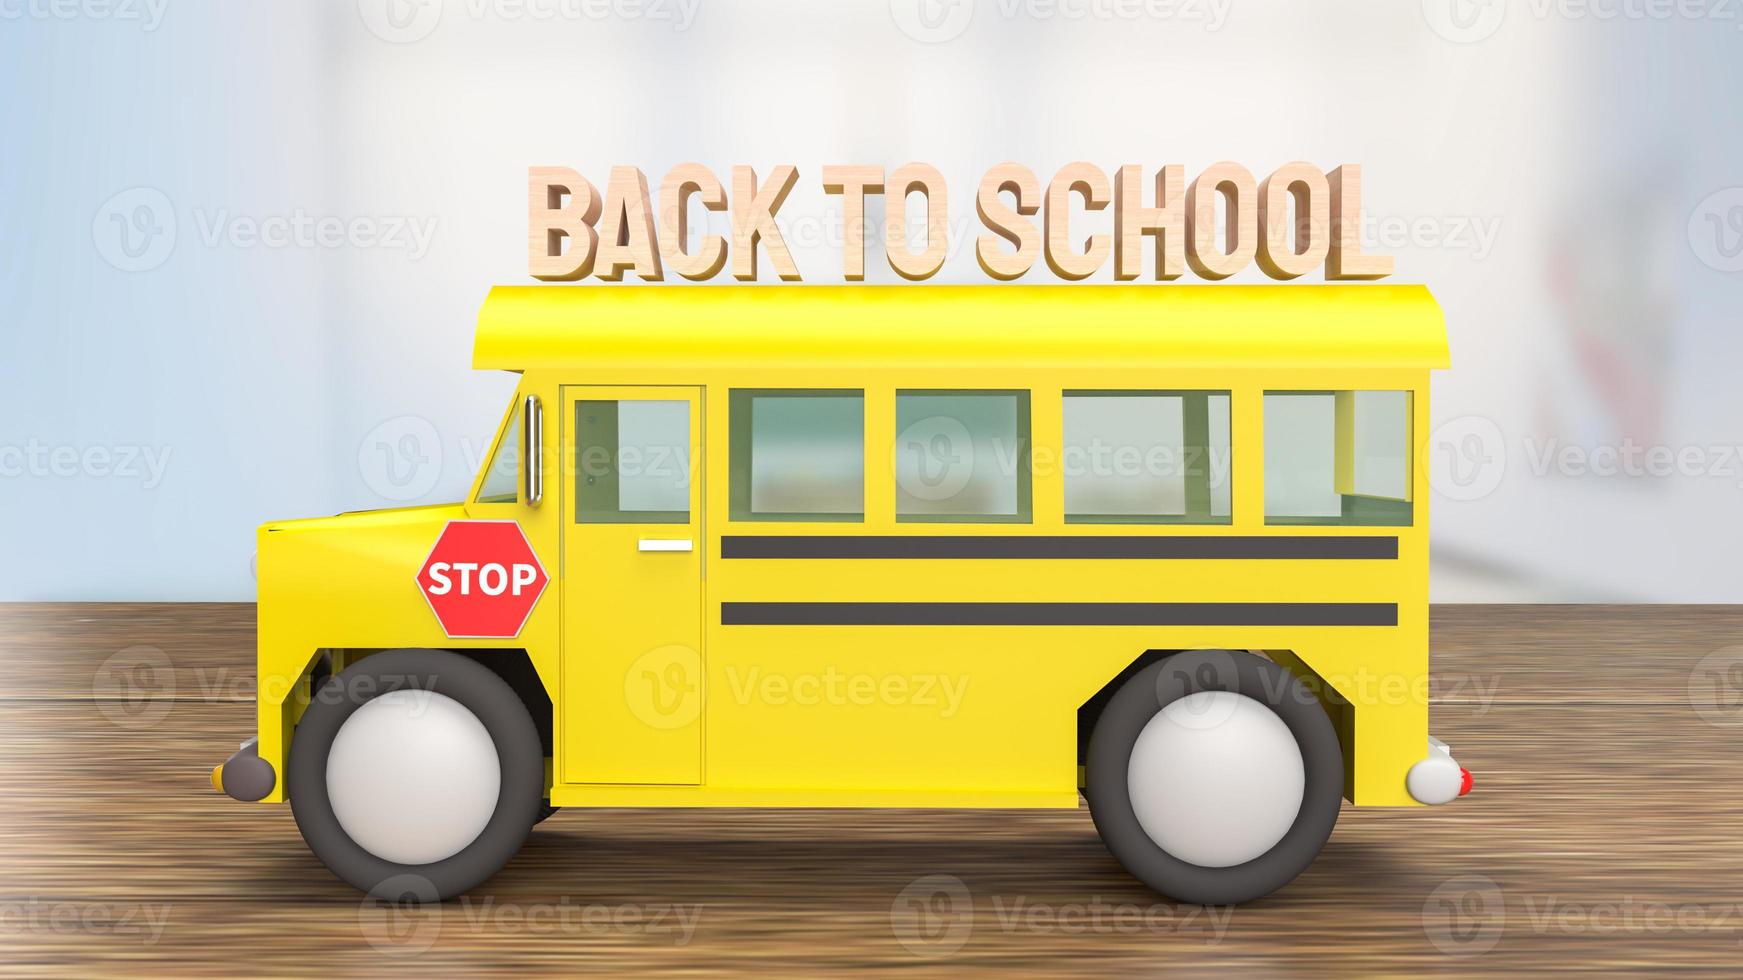 skolbussen på träbord för tillbaka till skolan koncept 3d-rendering foto